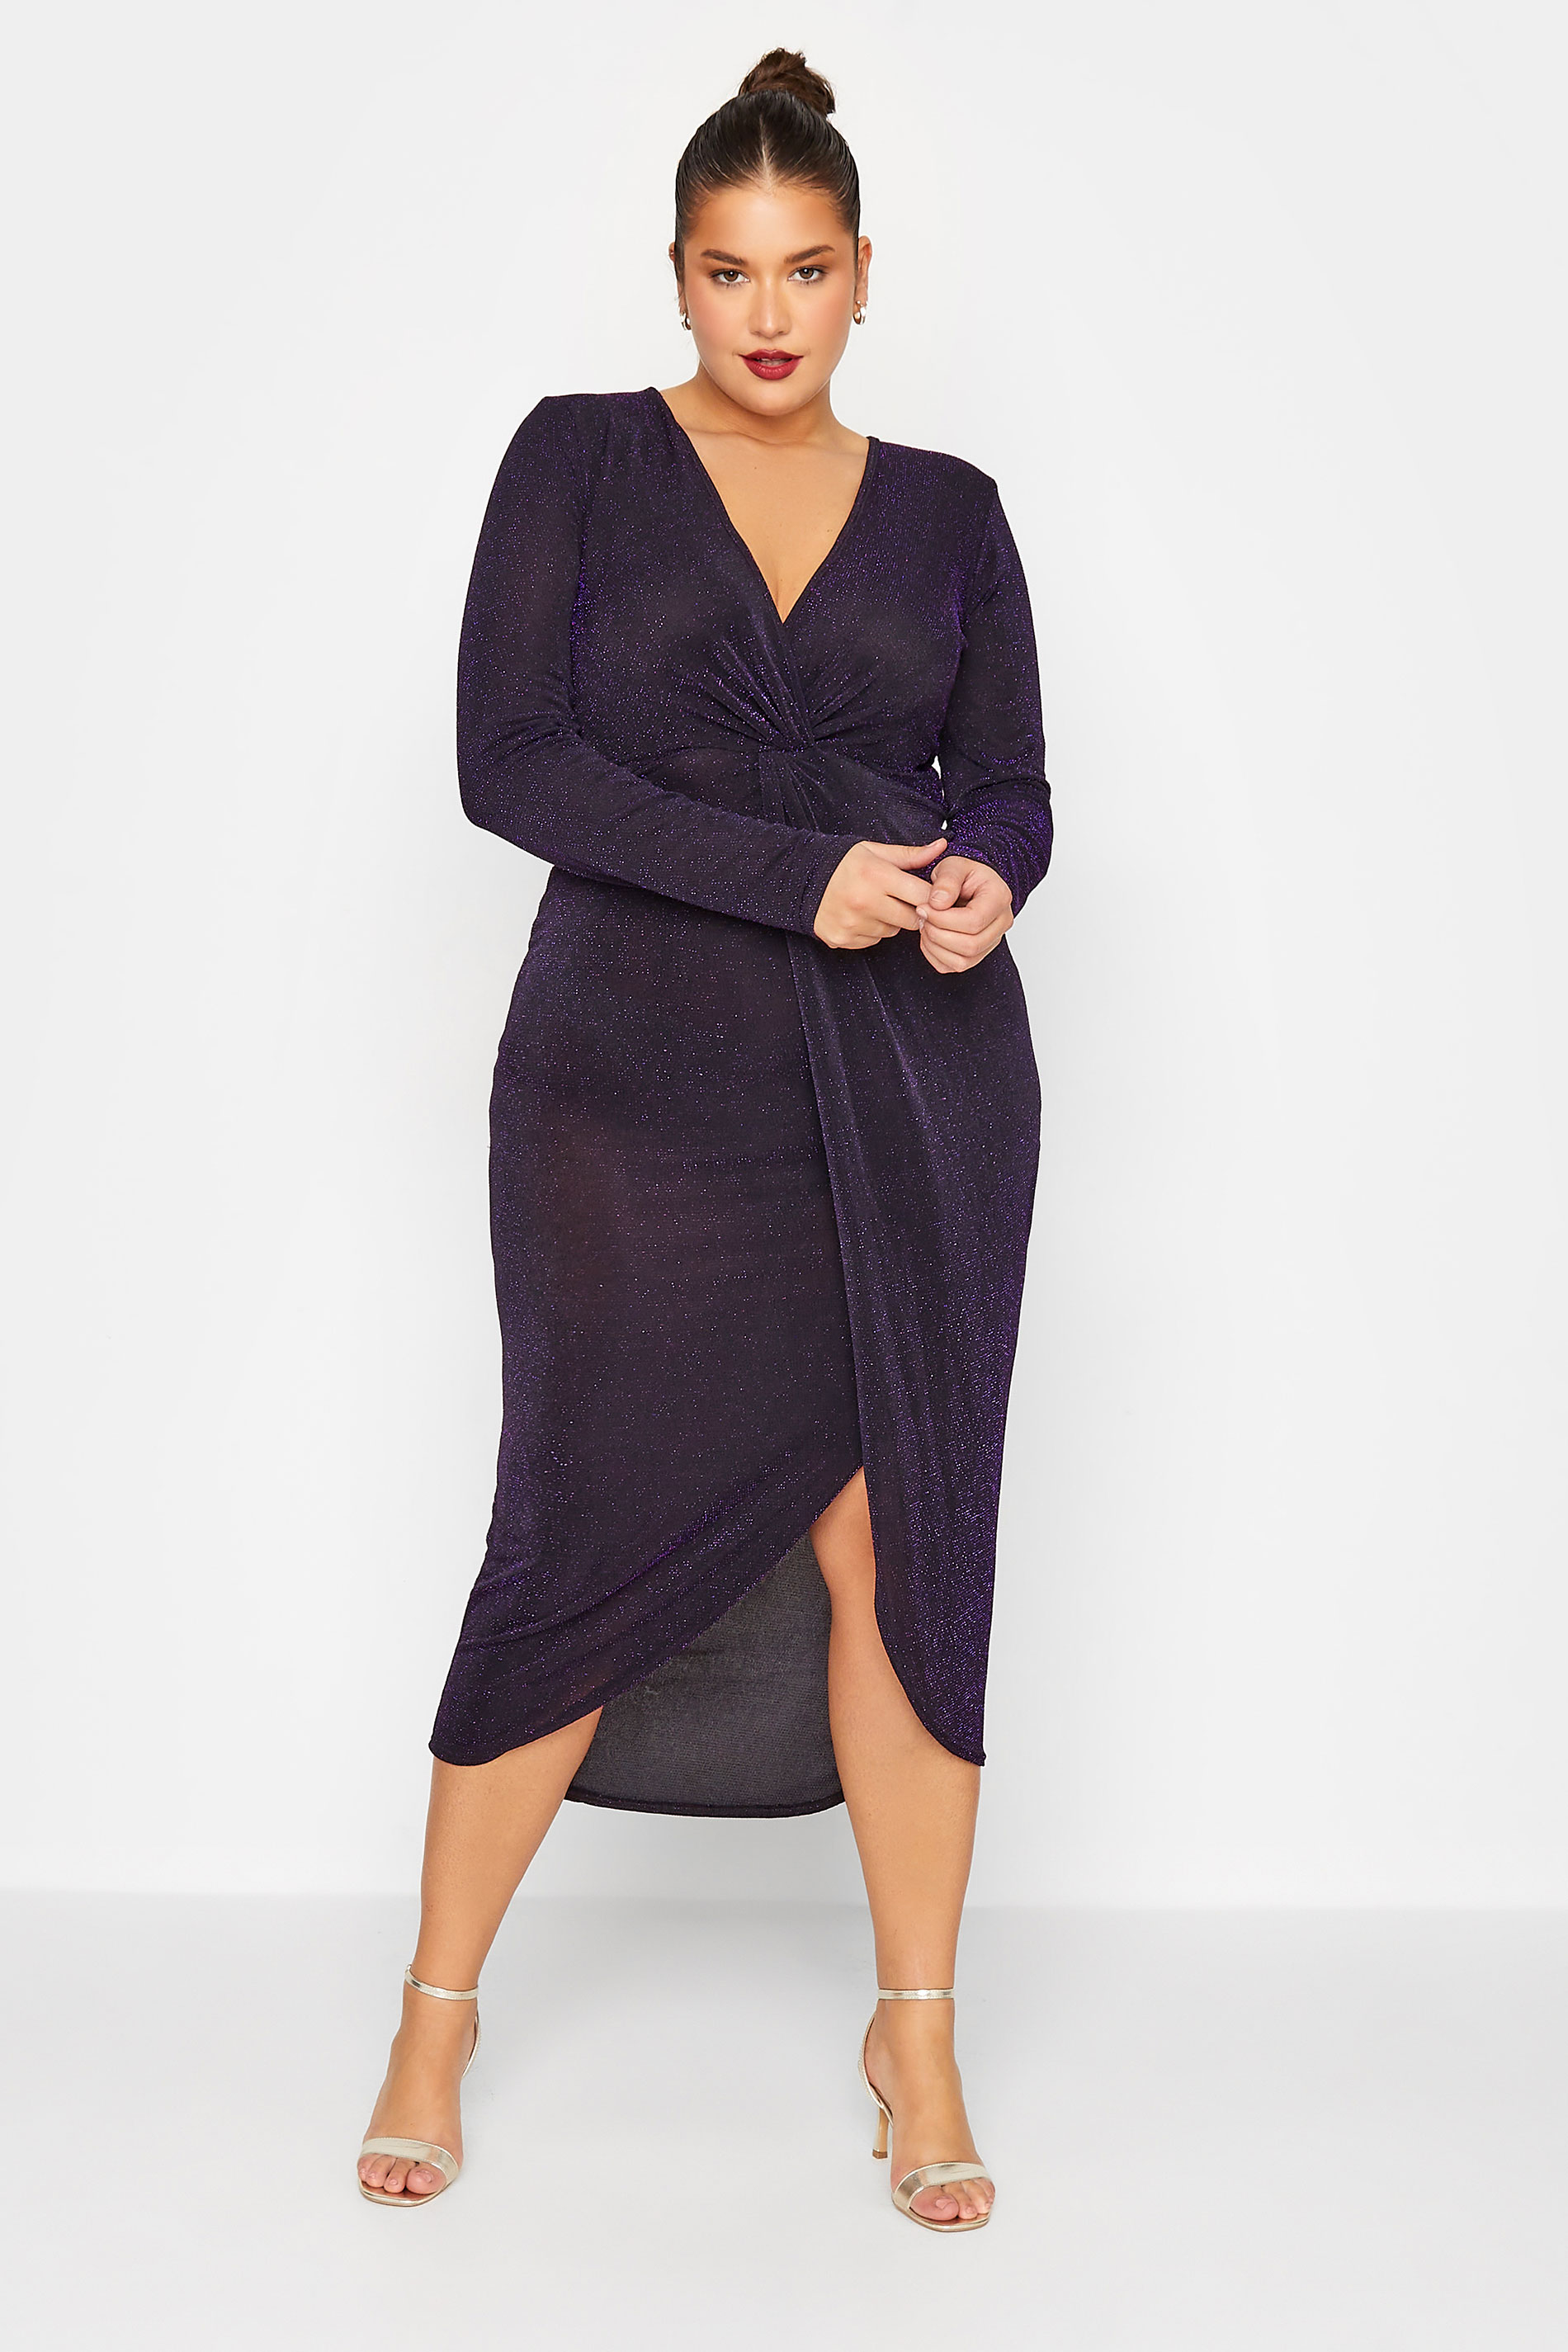 LTS Tall Women's Black & Purple Glitter Twist Wrap Midi Dress | Long Tall Sally 1